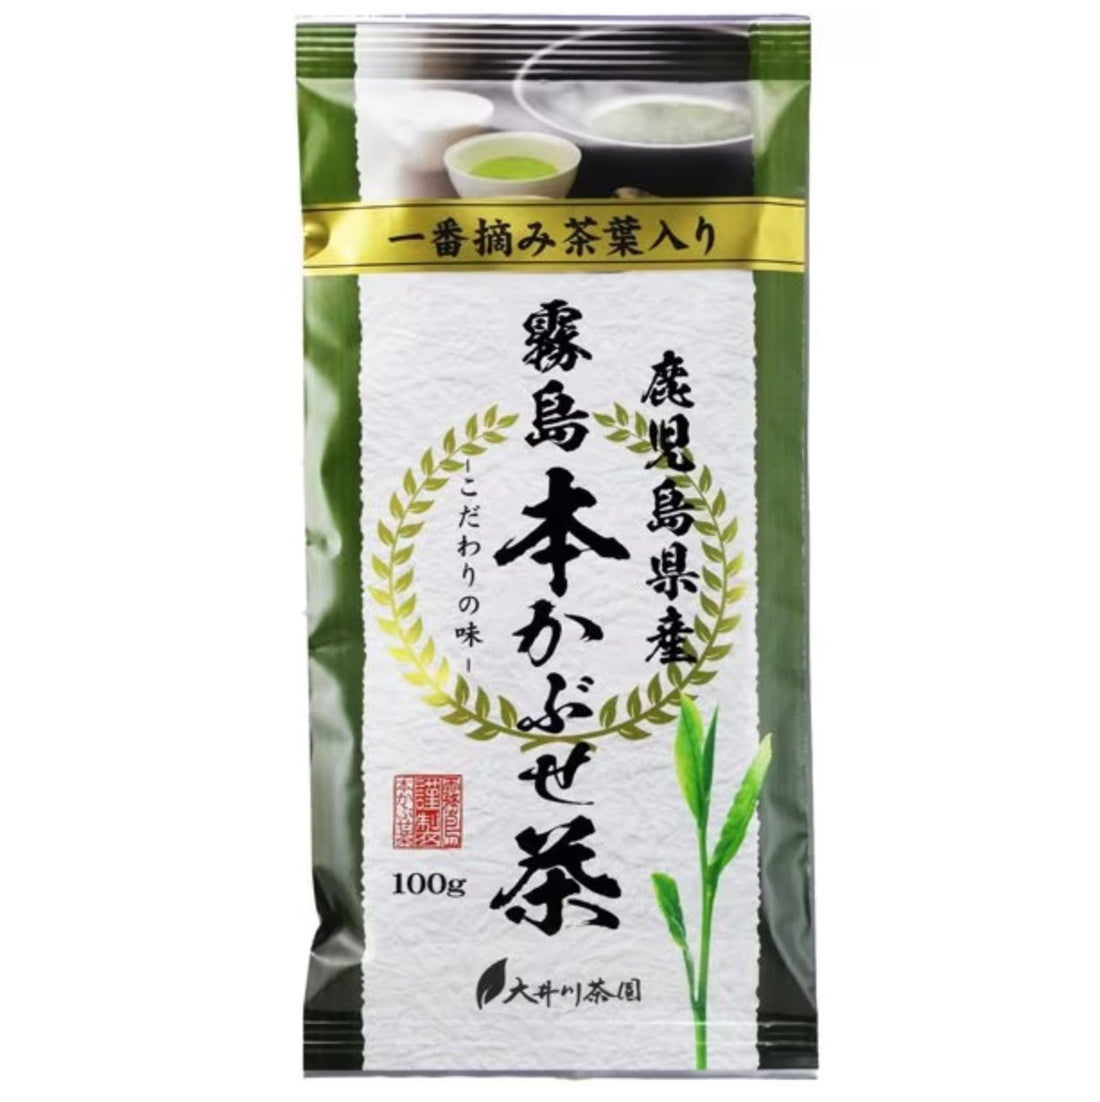 Oigawa Tea Garden Kirishima Honkabusecha Midori 100g - NihonMura